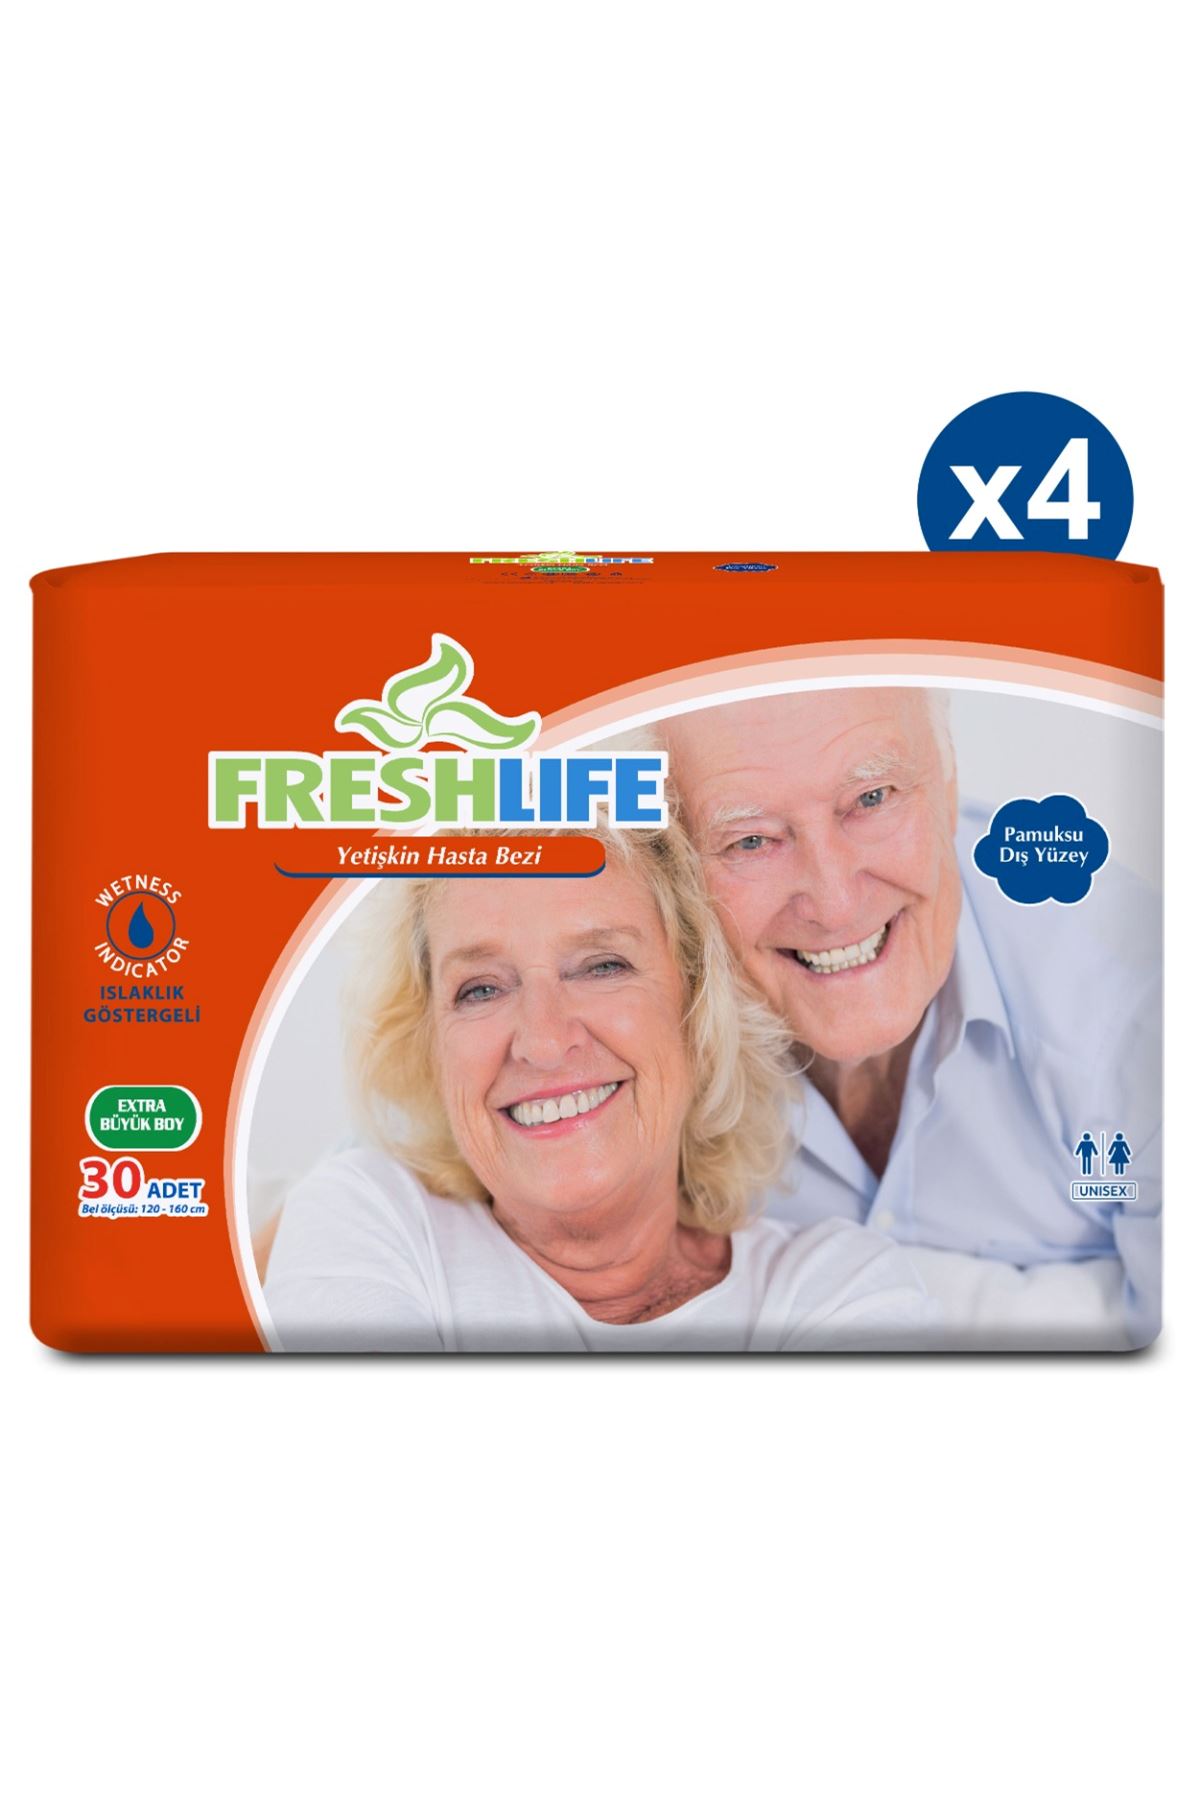 4'lü Freshlife Xlarge Yetişkin Hasta Bezi 30x4 (120 Adet)